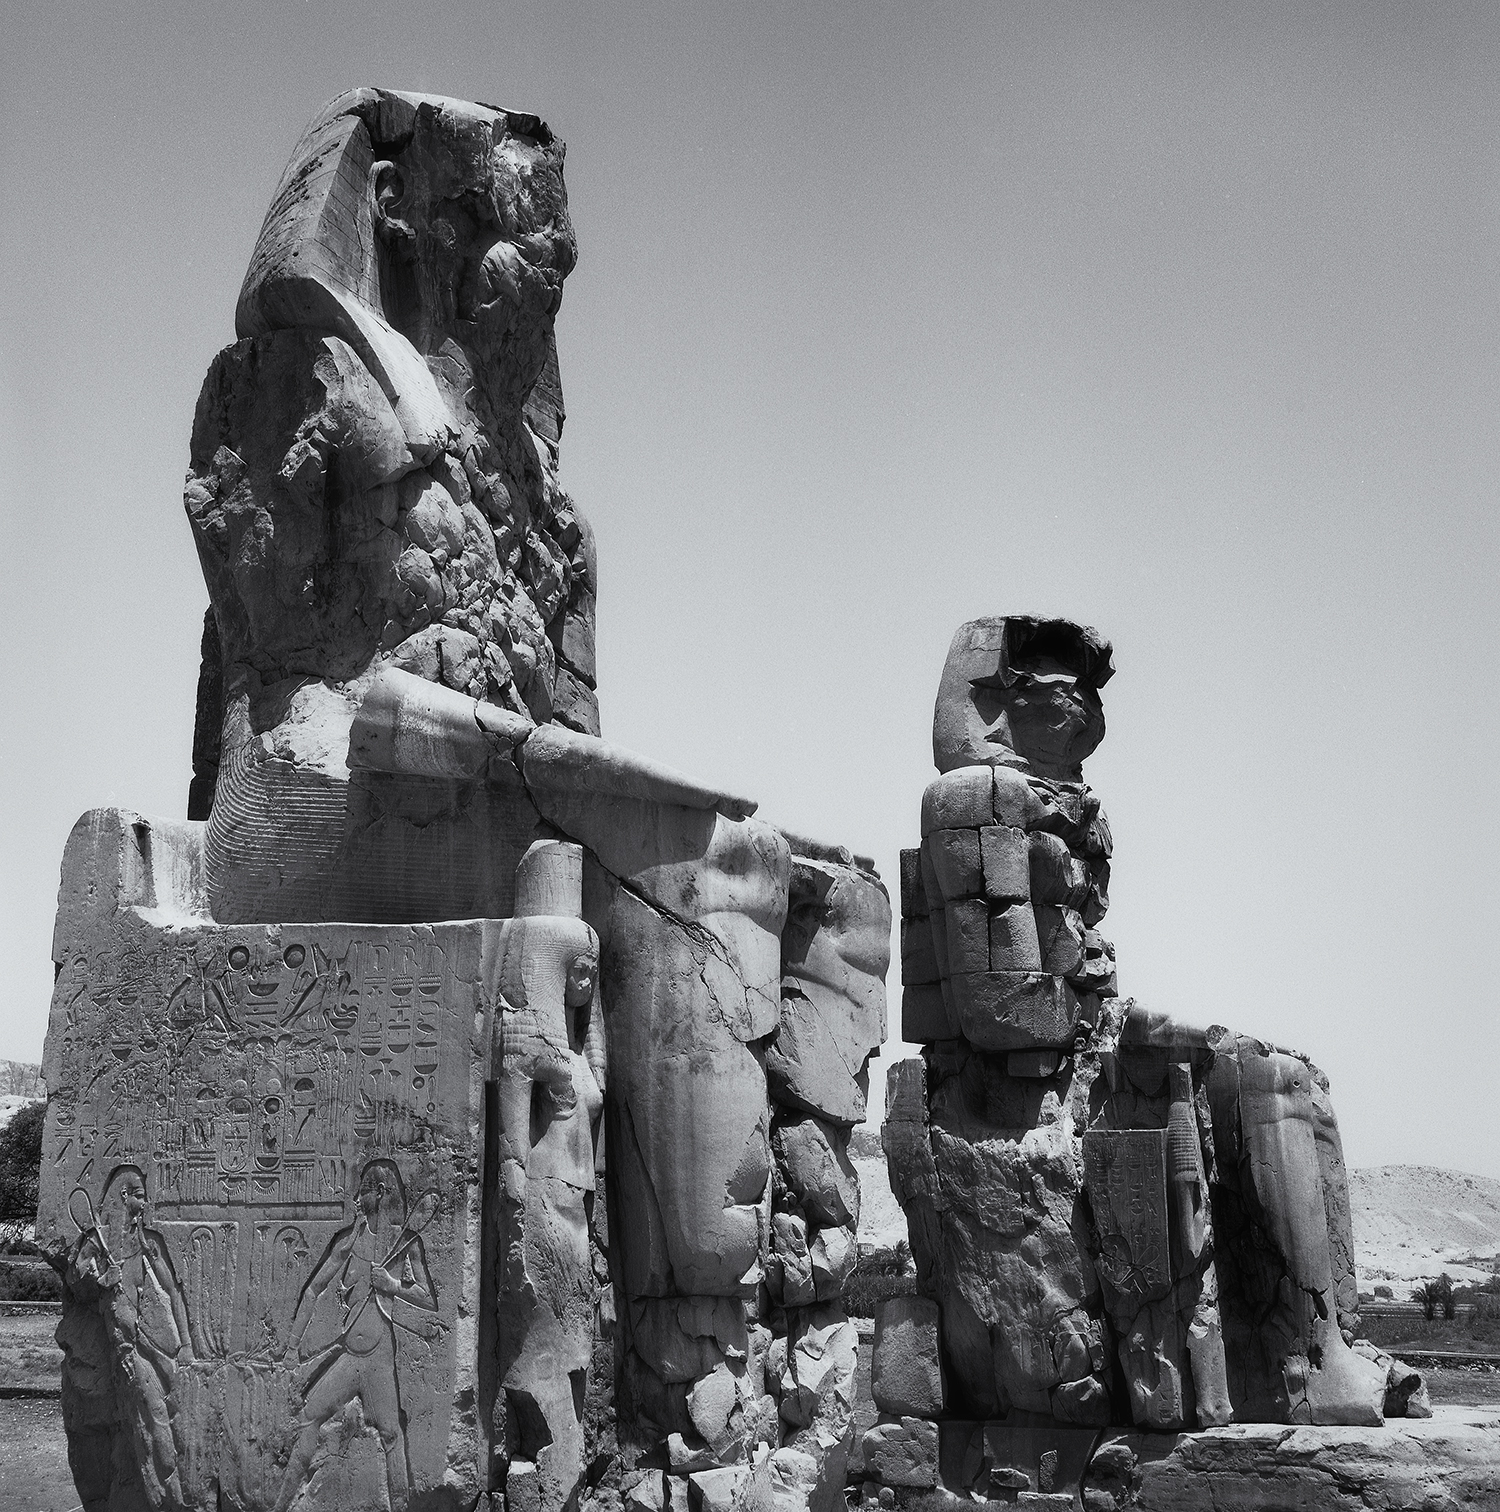 Colossi of Memnon.jpg